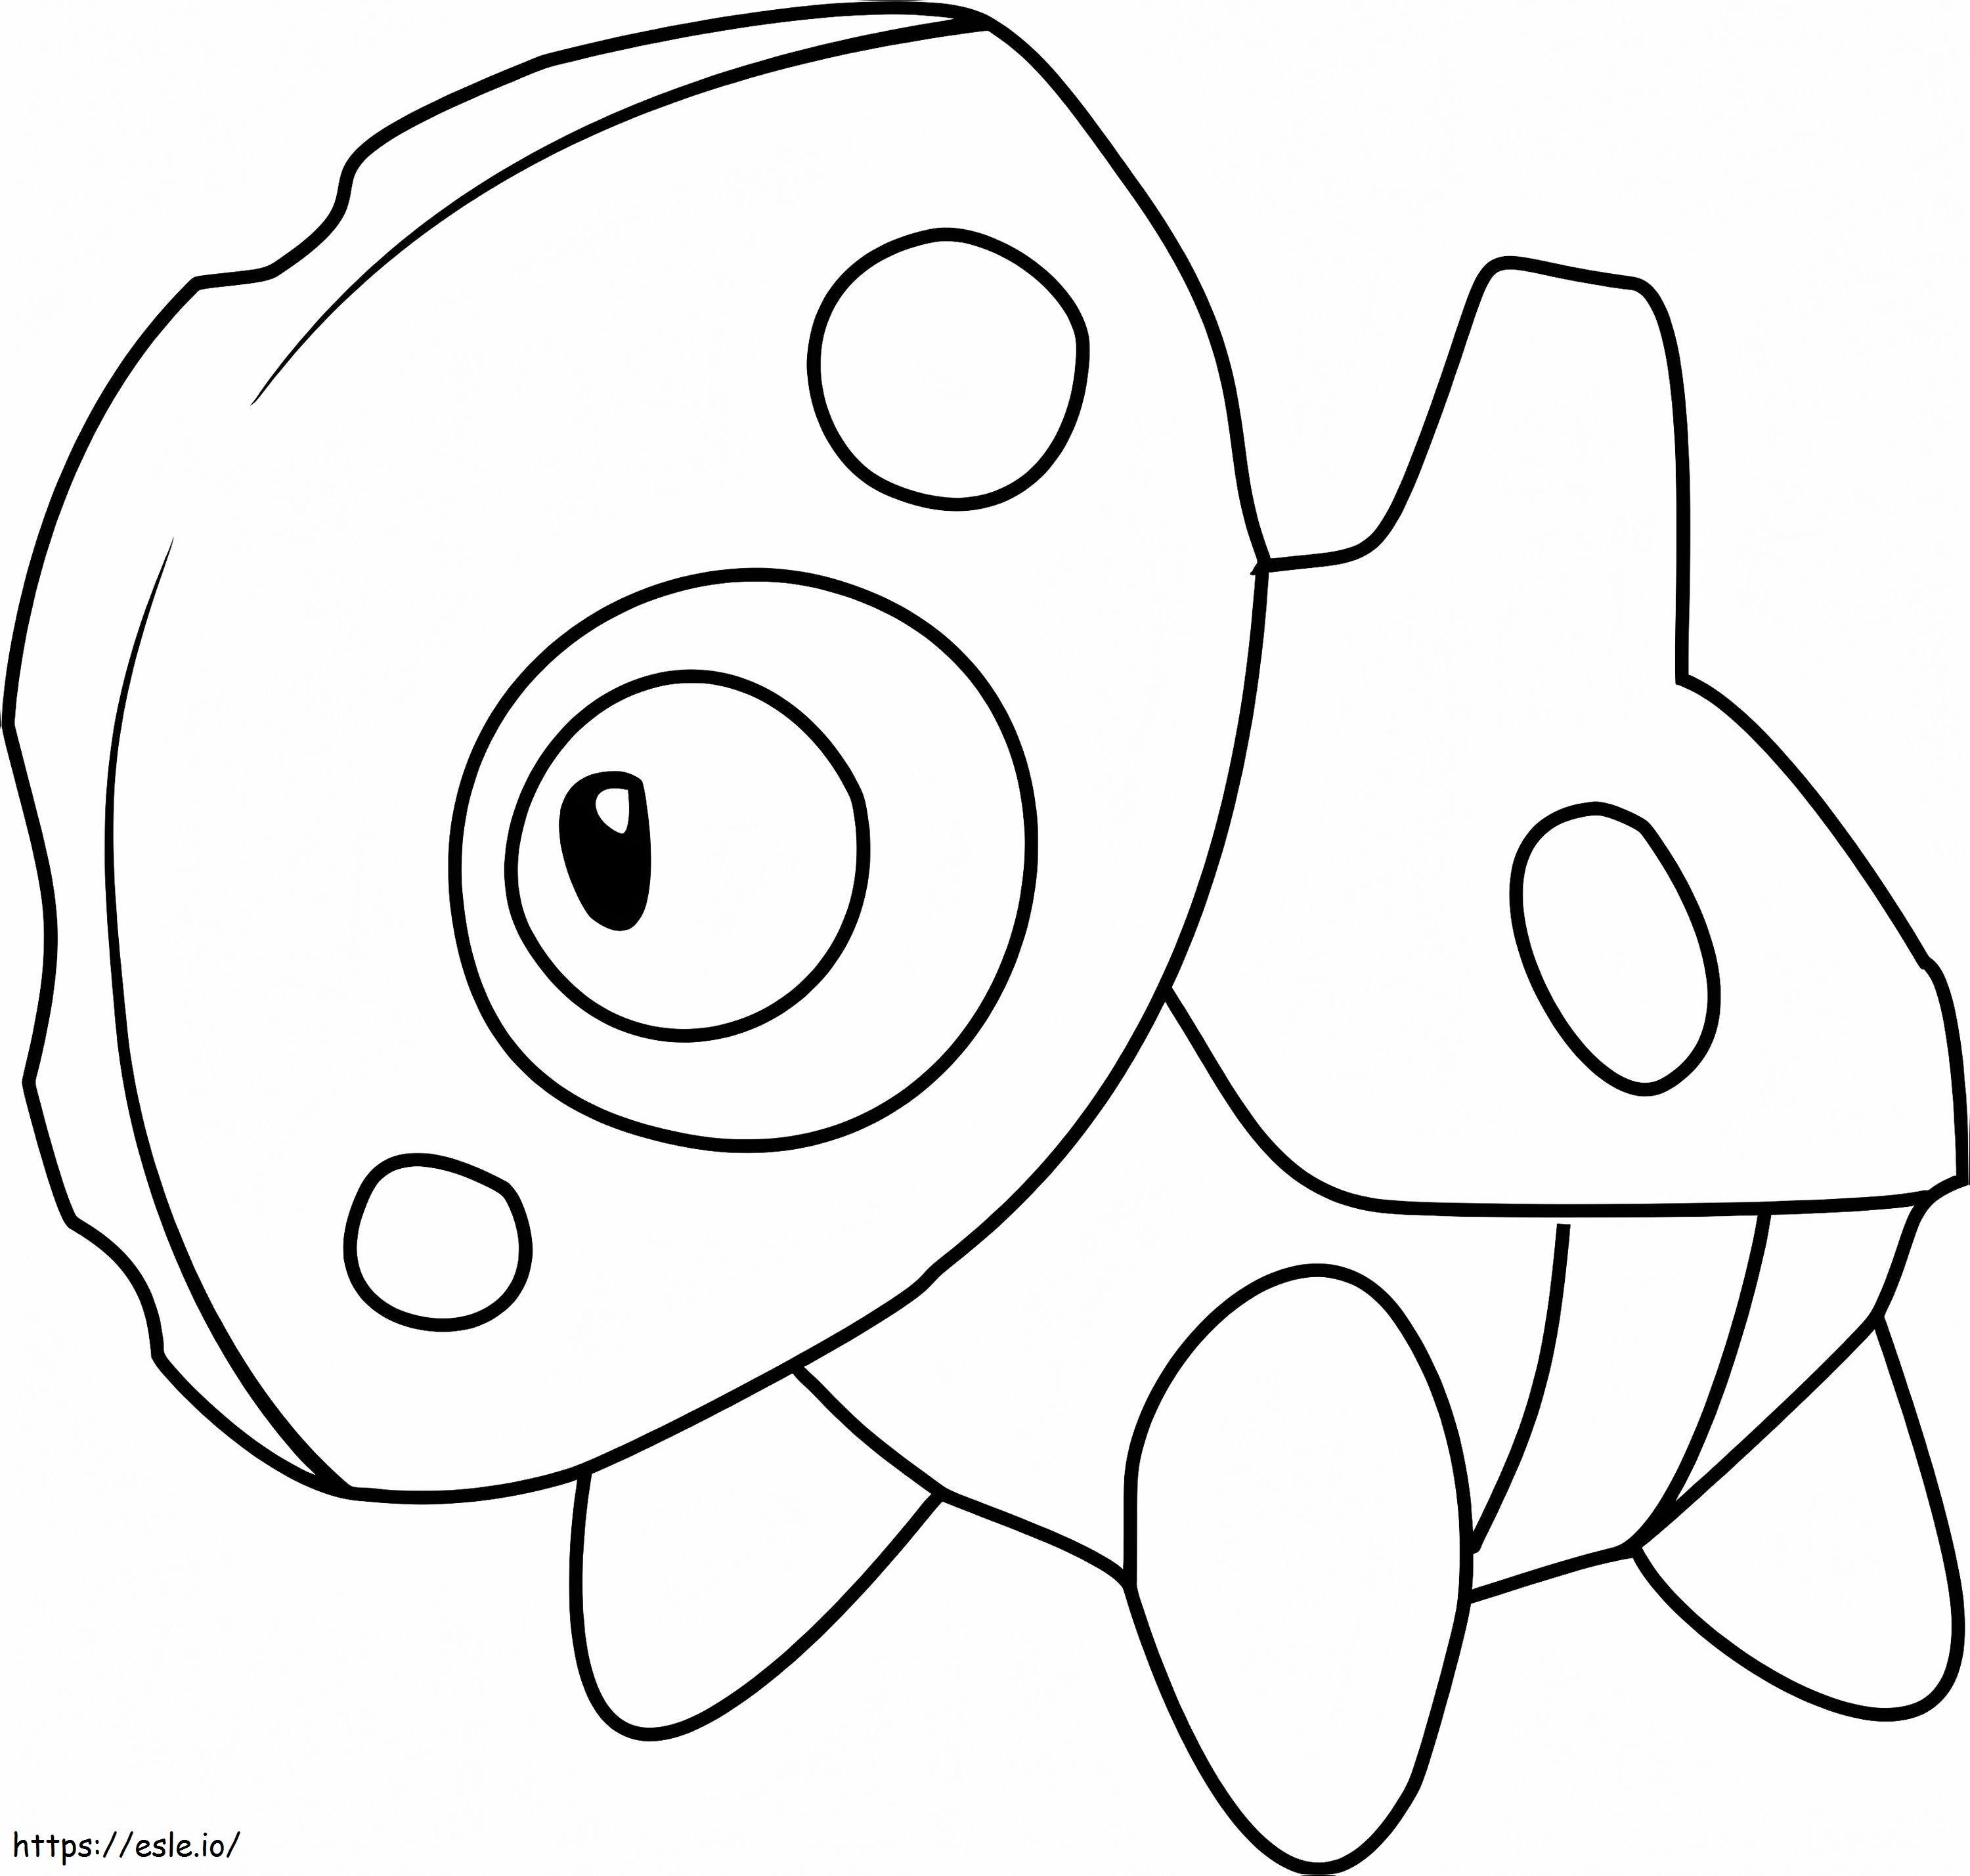 Coloriage Pokémon Aron Gen 3 à imprimer dessin